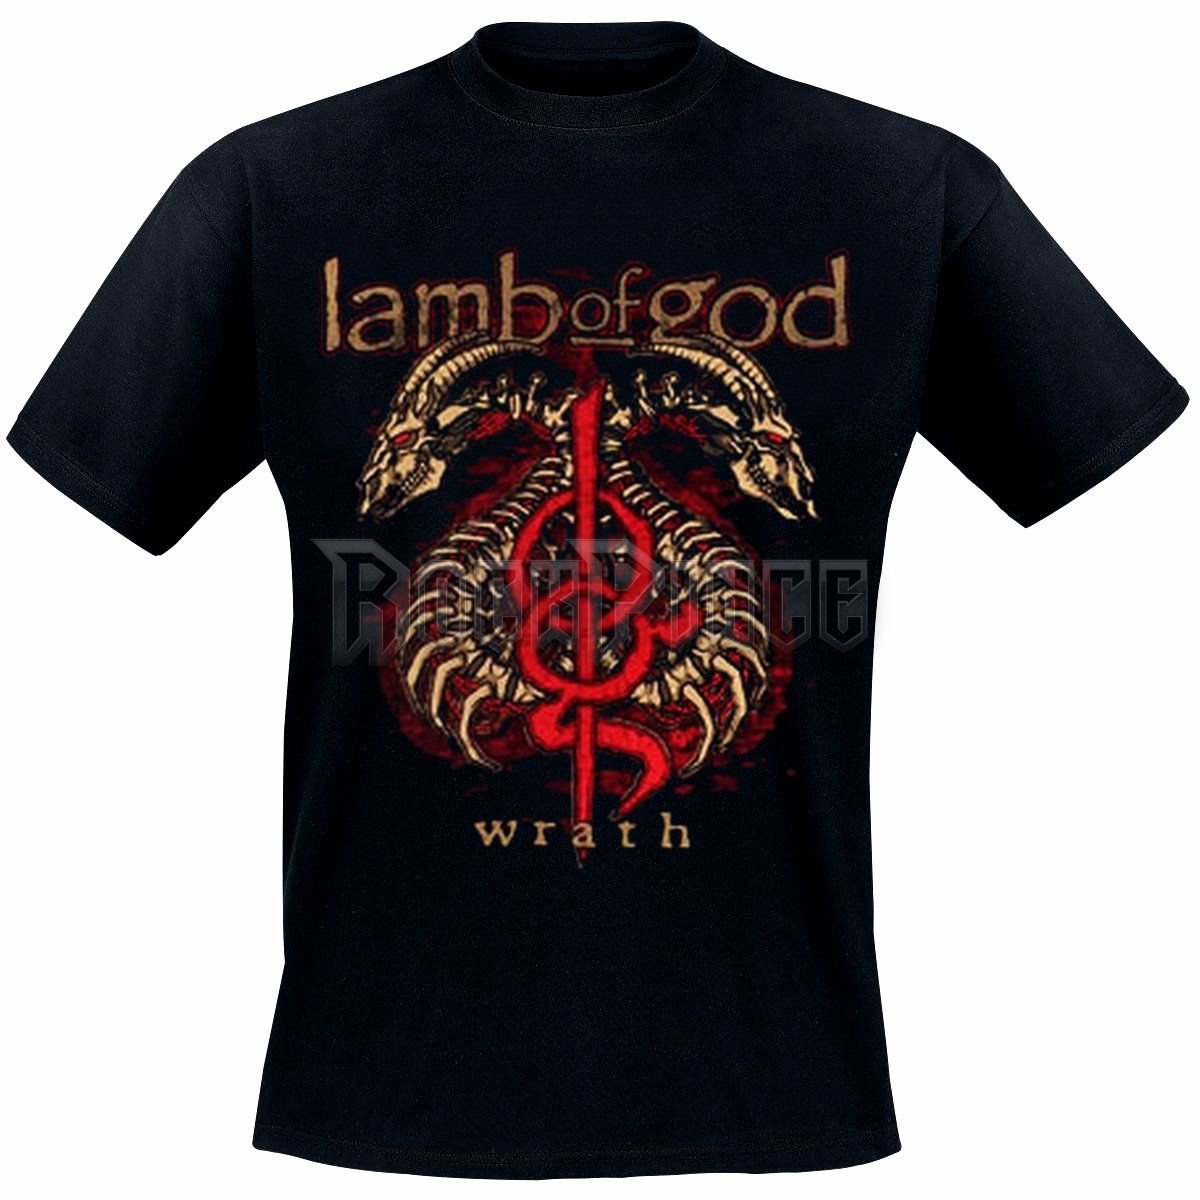 Lamb Of God - Wrath - UNISEX PÓLÓ